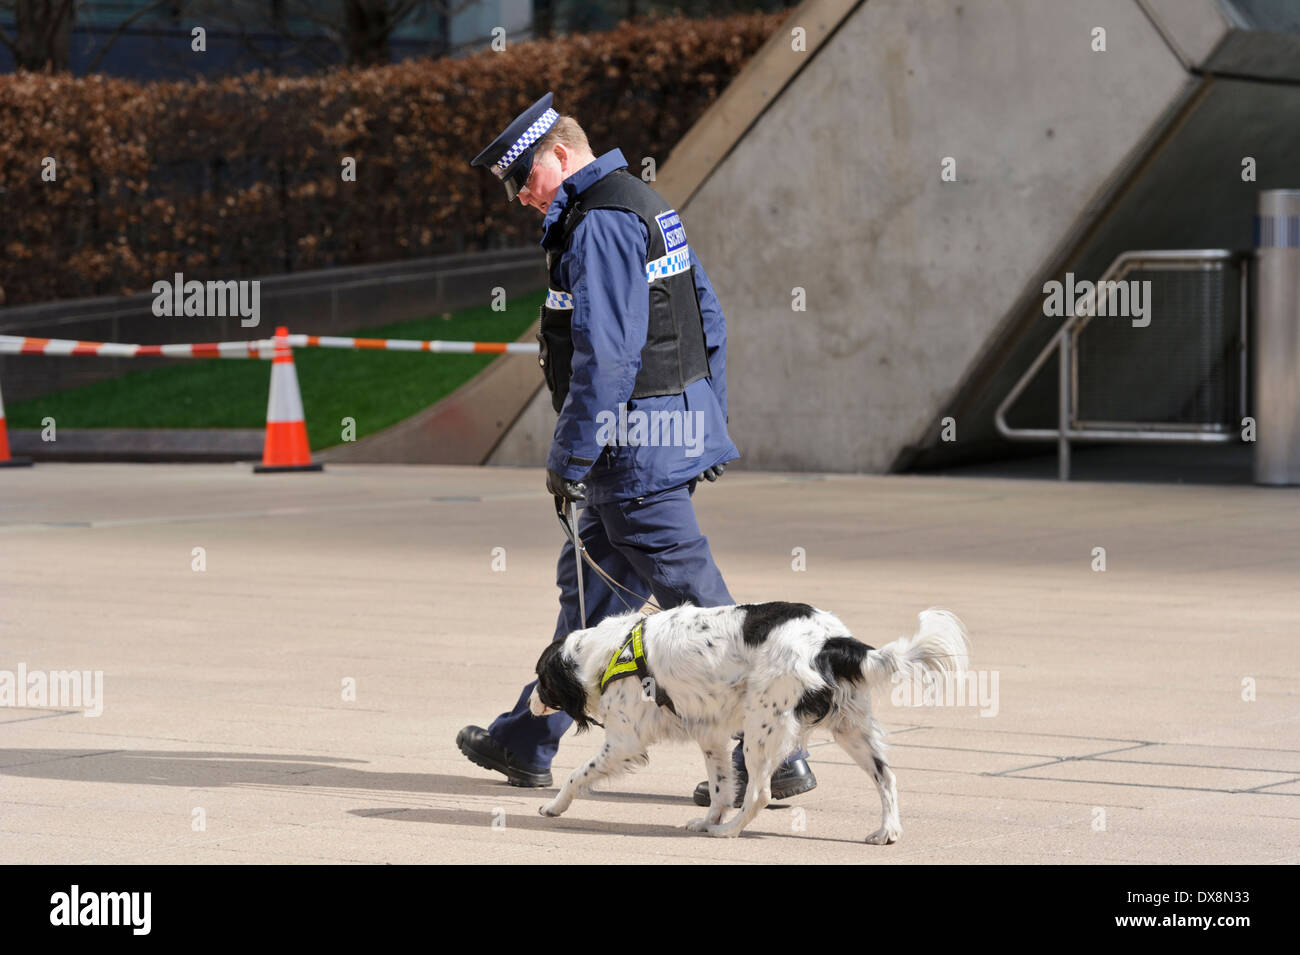 Un garde de sécurité en uniforme en patrouille avec un chien, Londres, Angleterre, Royaume-Uni. Banque D'Images